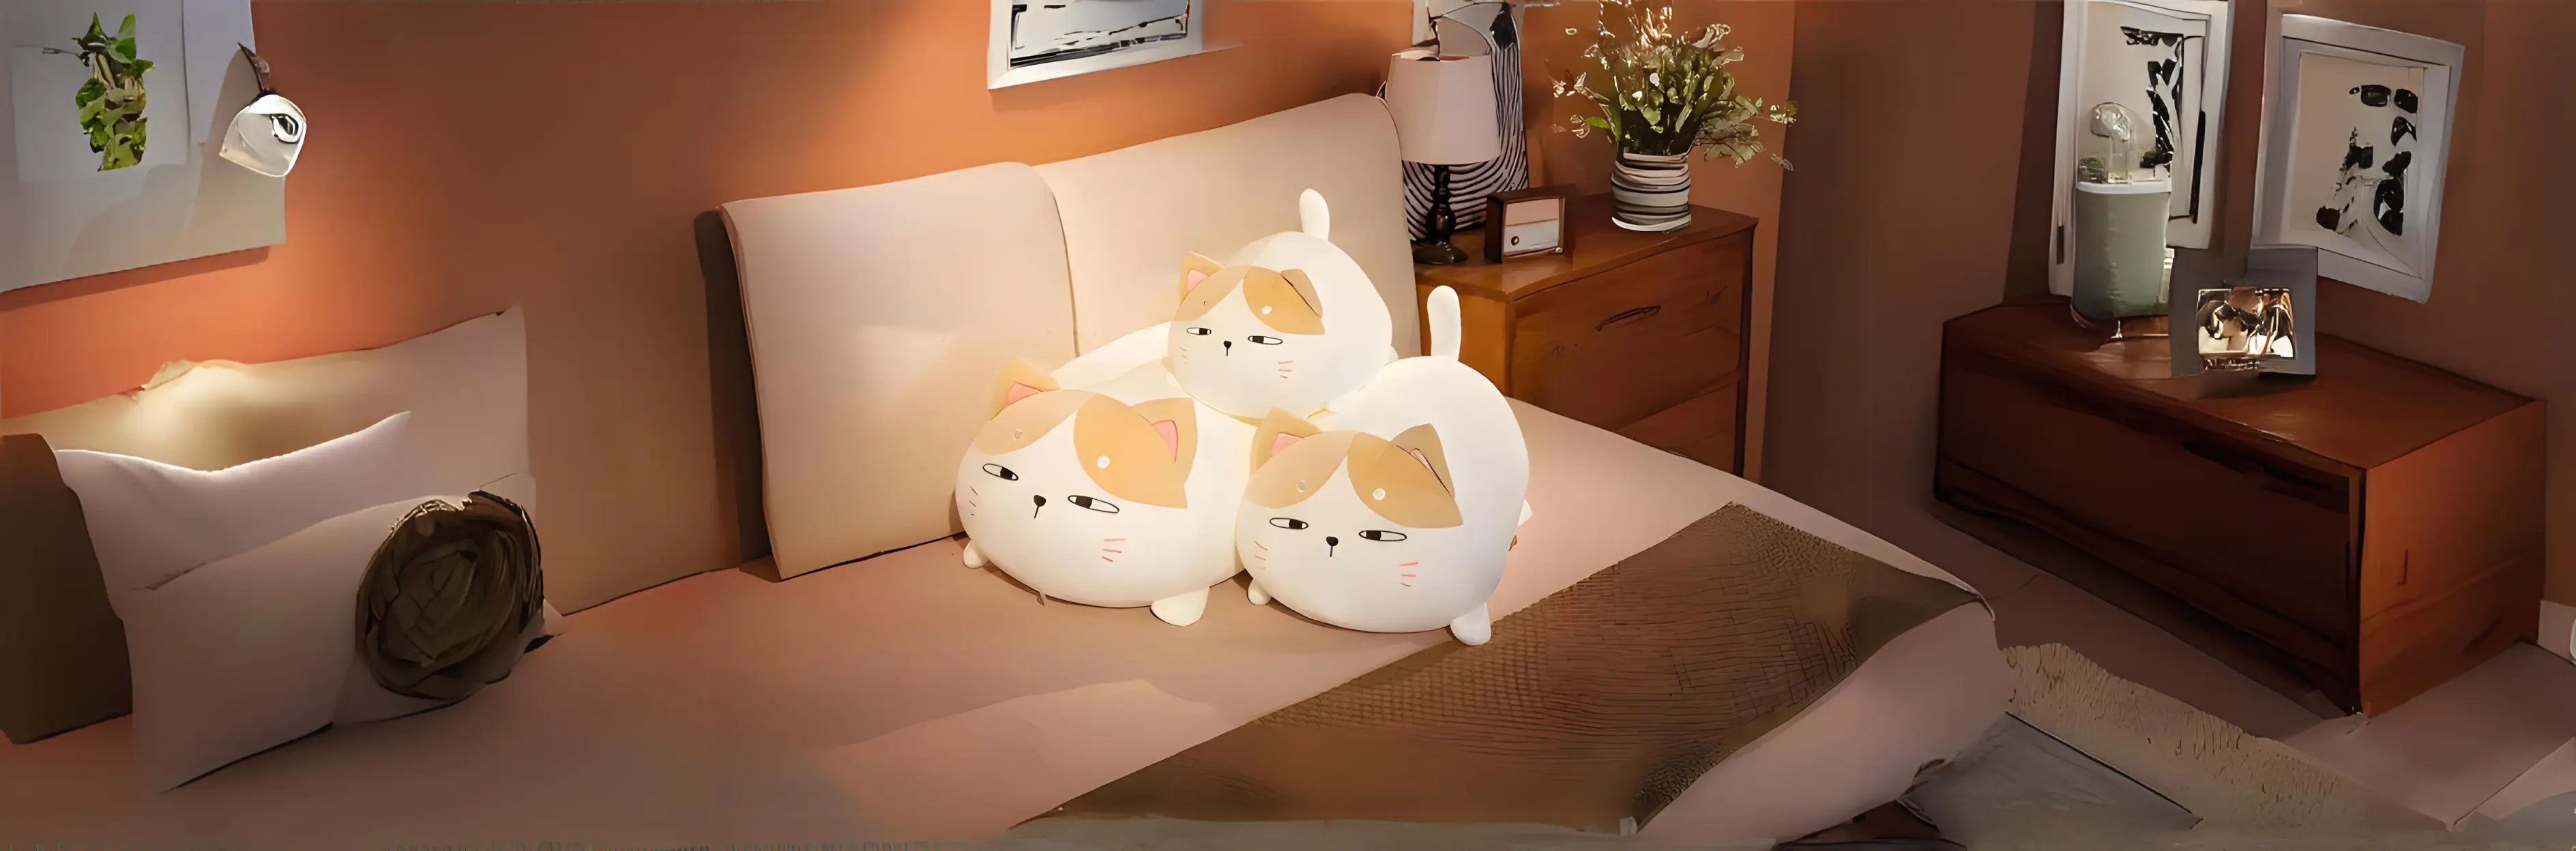 Kawai Cats Plushies - Adorbs Plushies